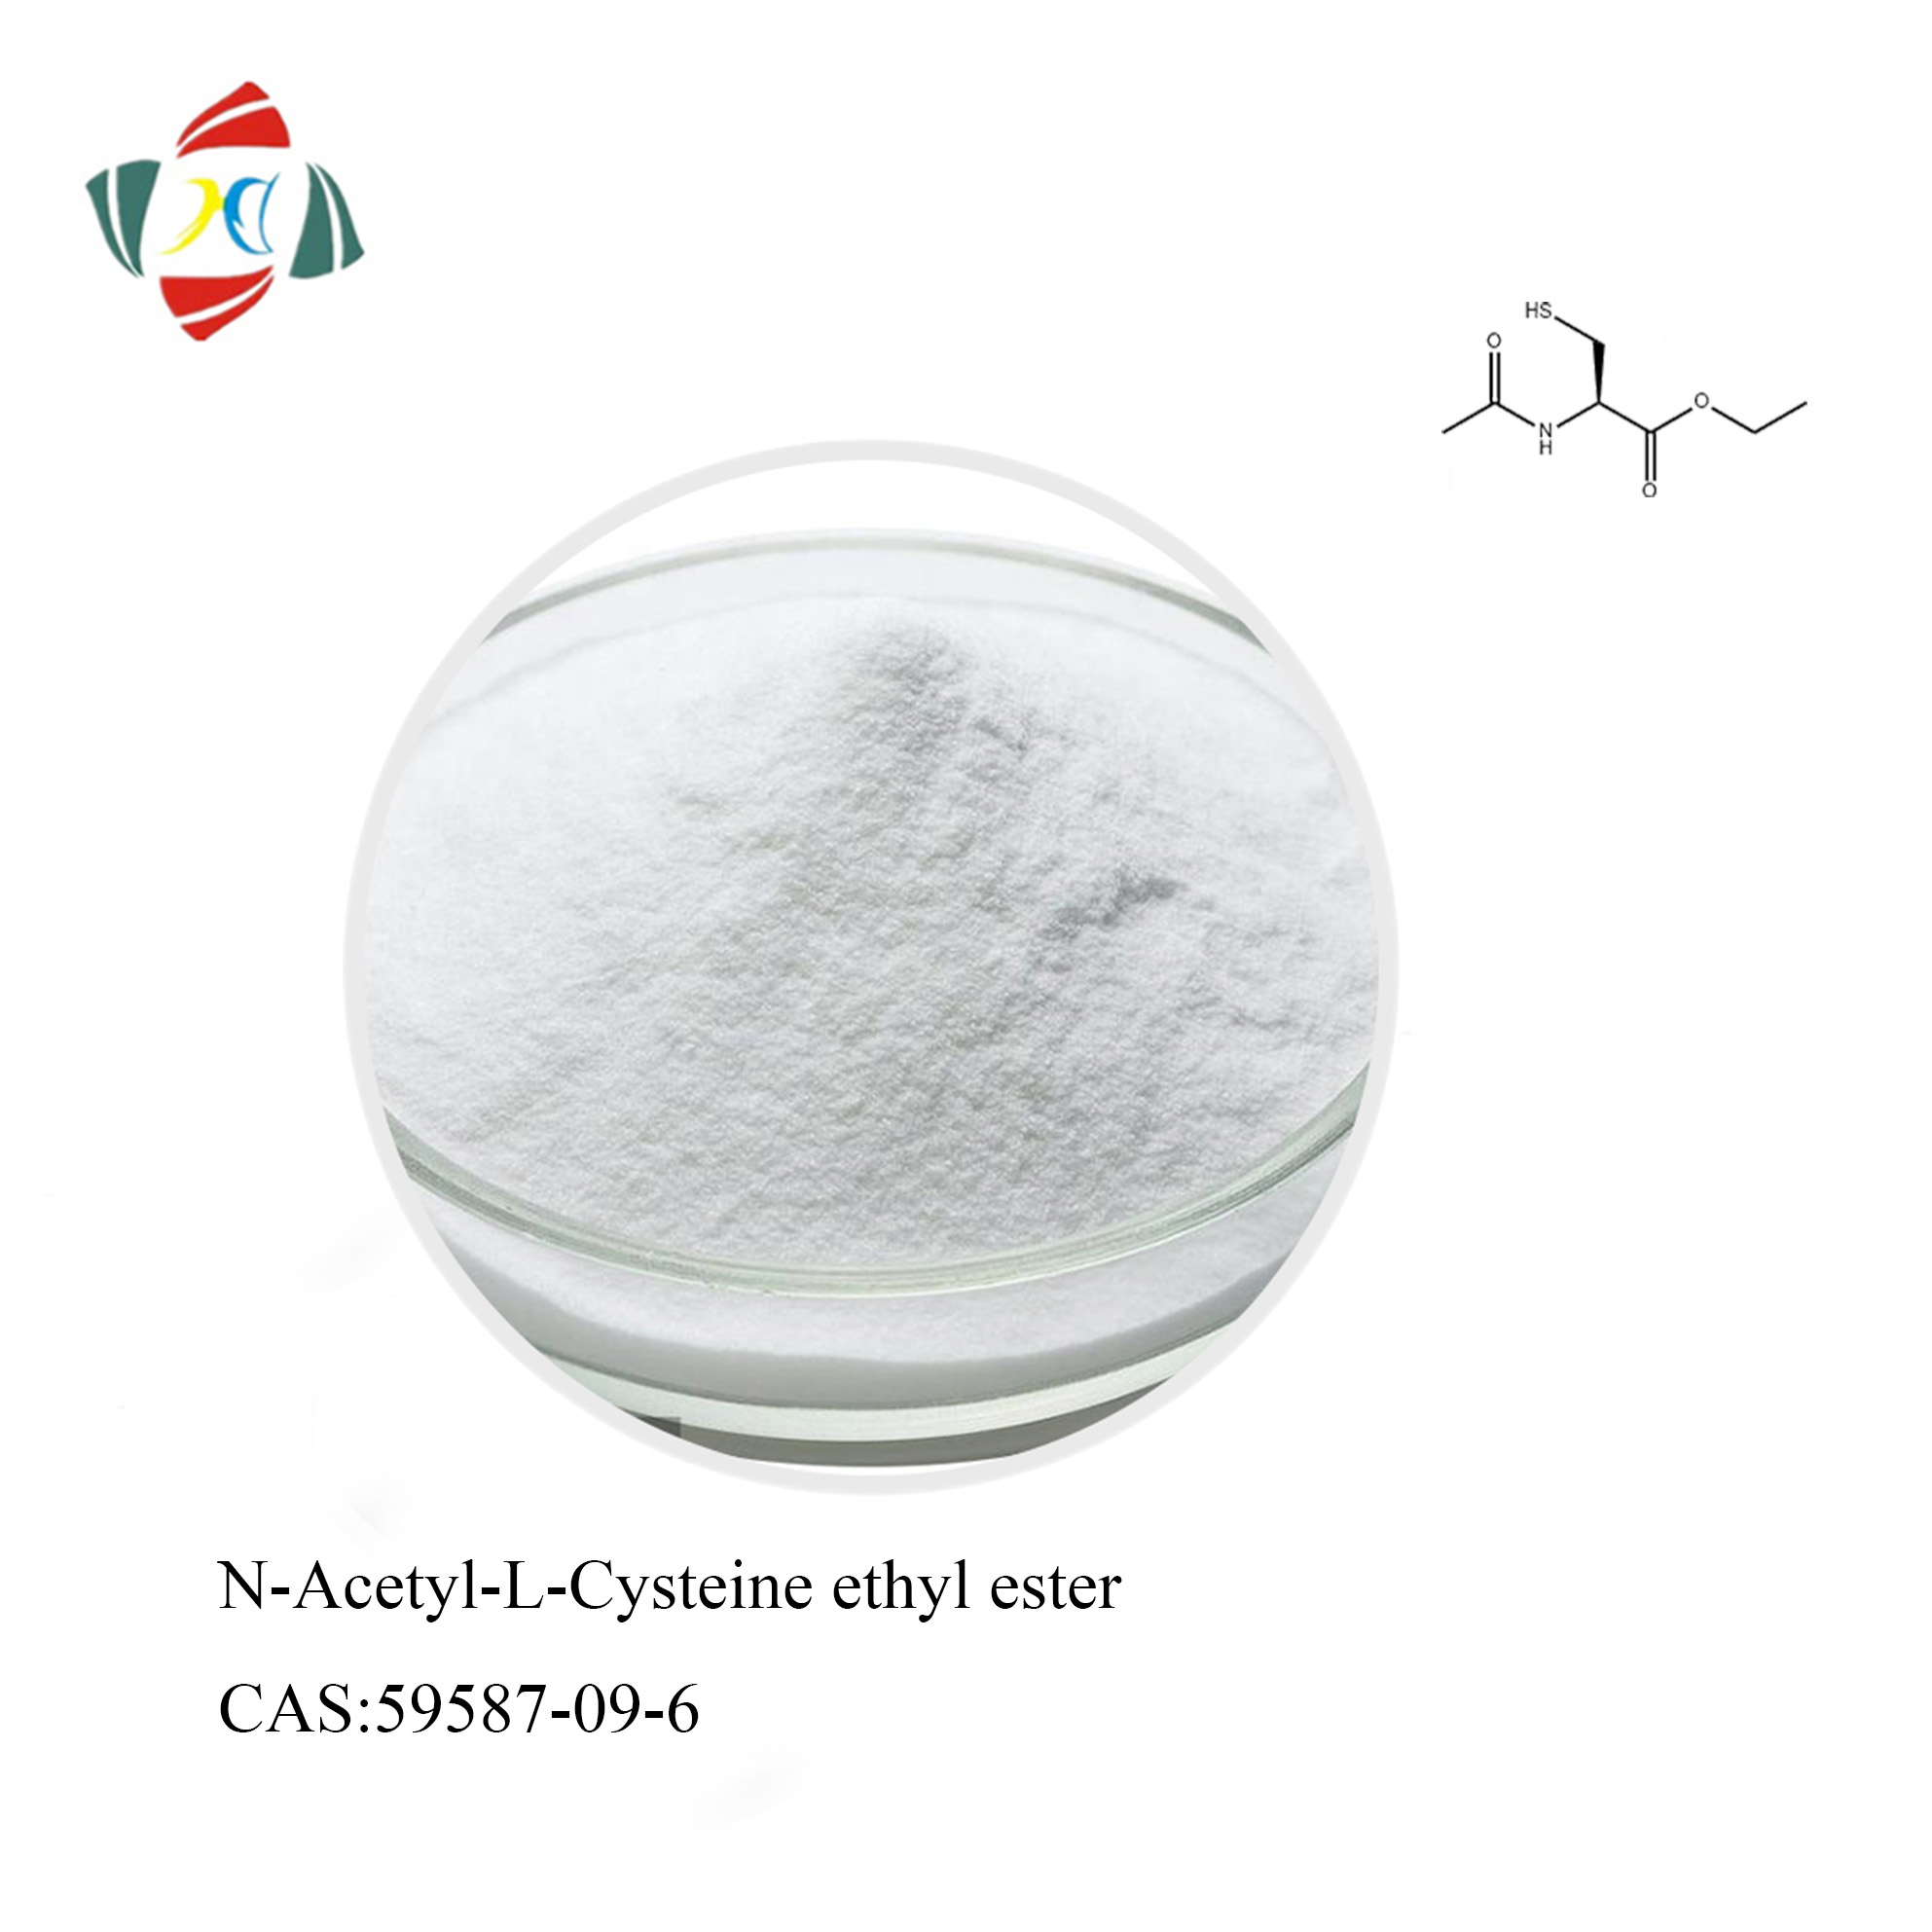 MACET N-Acetyl-L-Cysteine Ethyl Ester(NACET) CAS 59587-09-6